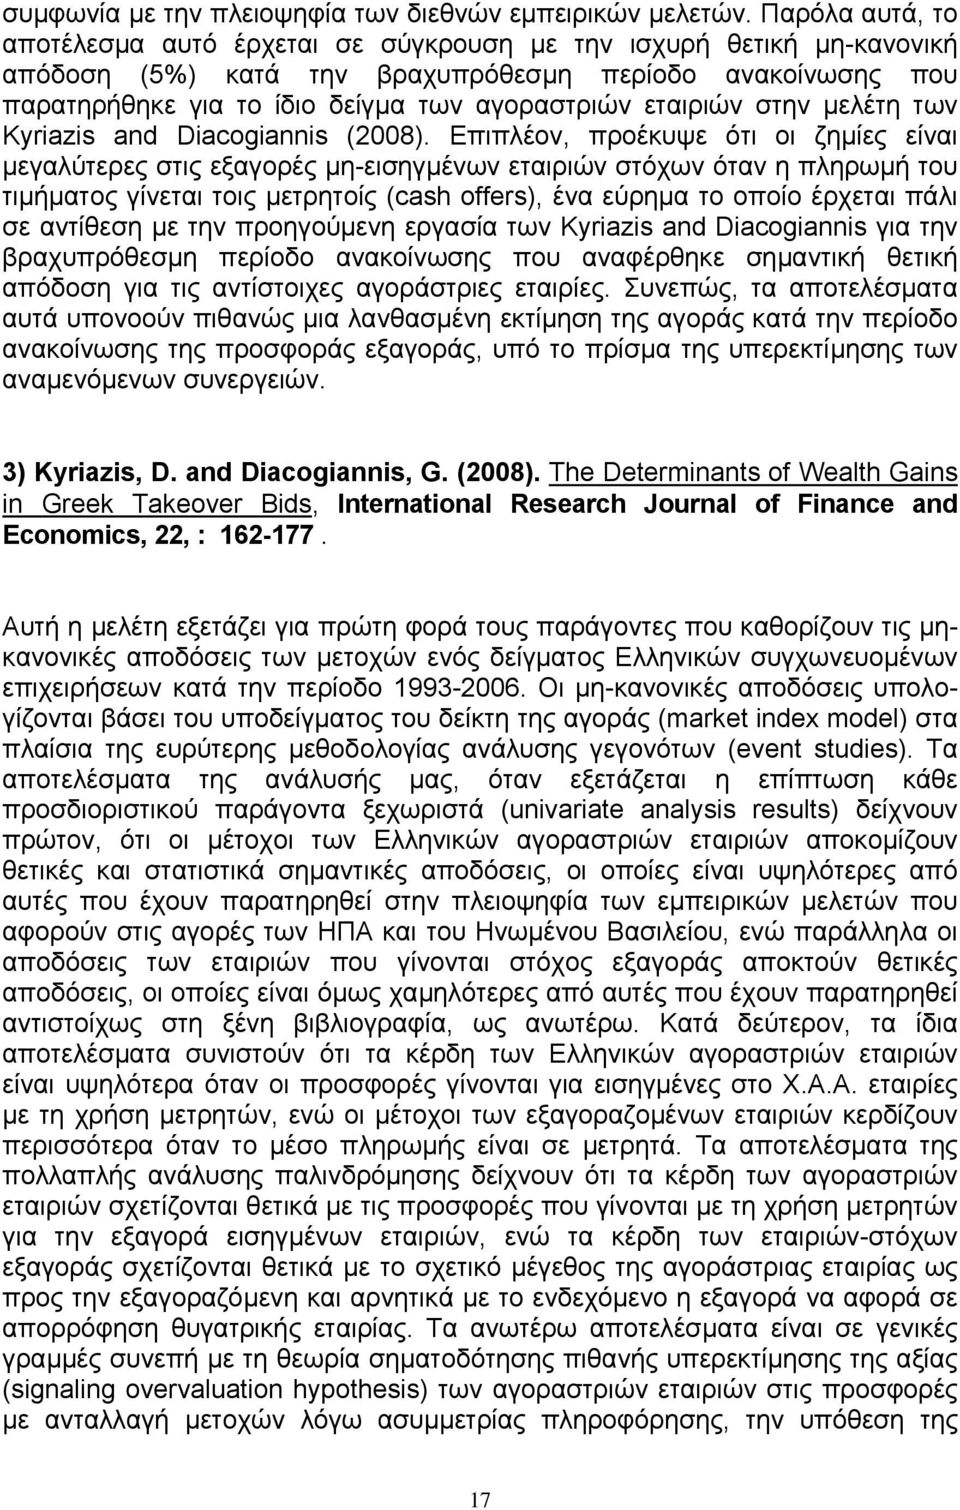 εταιριών στην µελέτη των Kyriazis and Diacogiannis (2008).